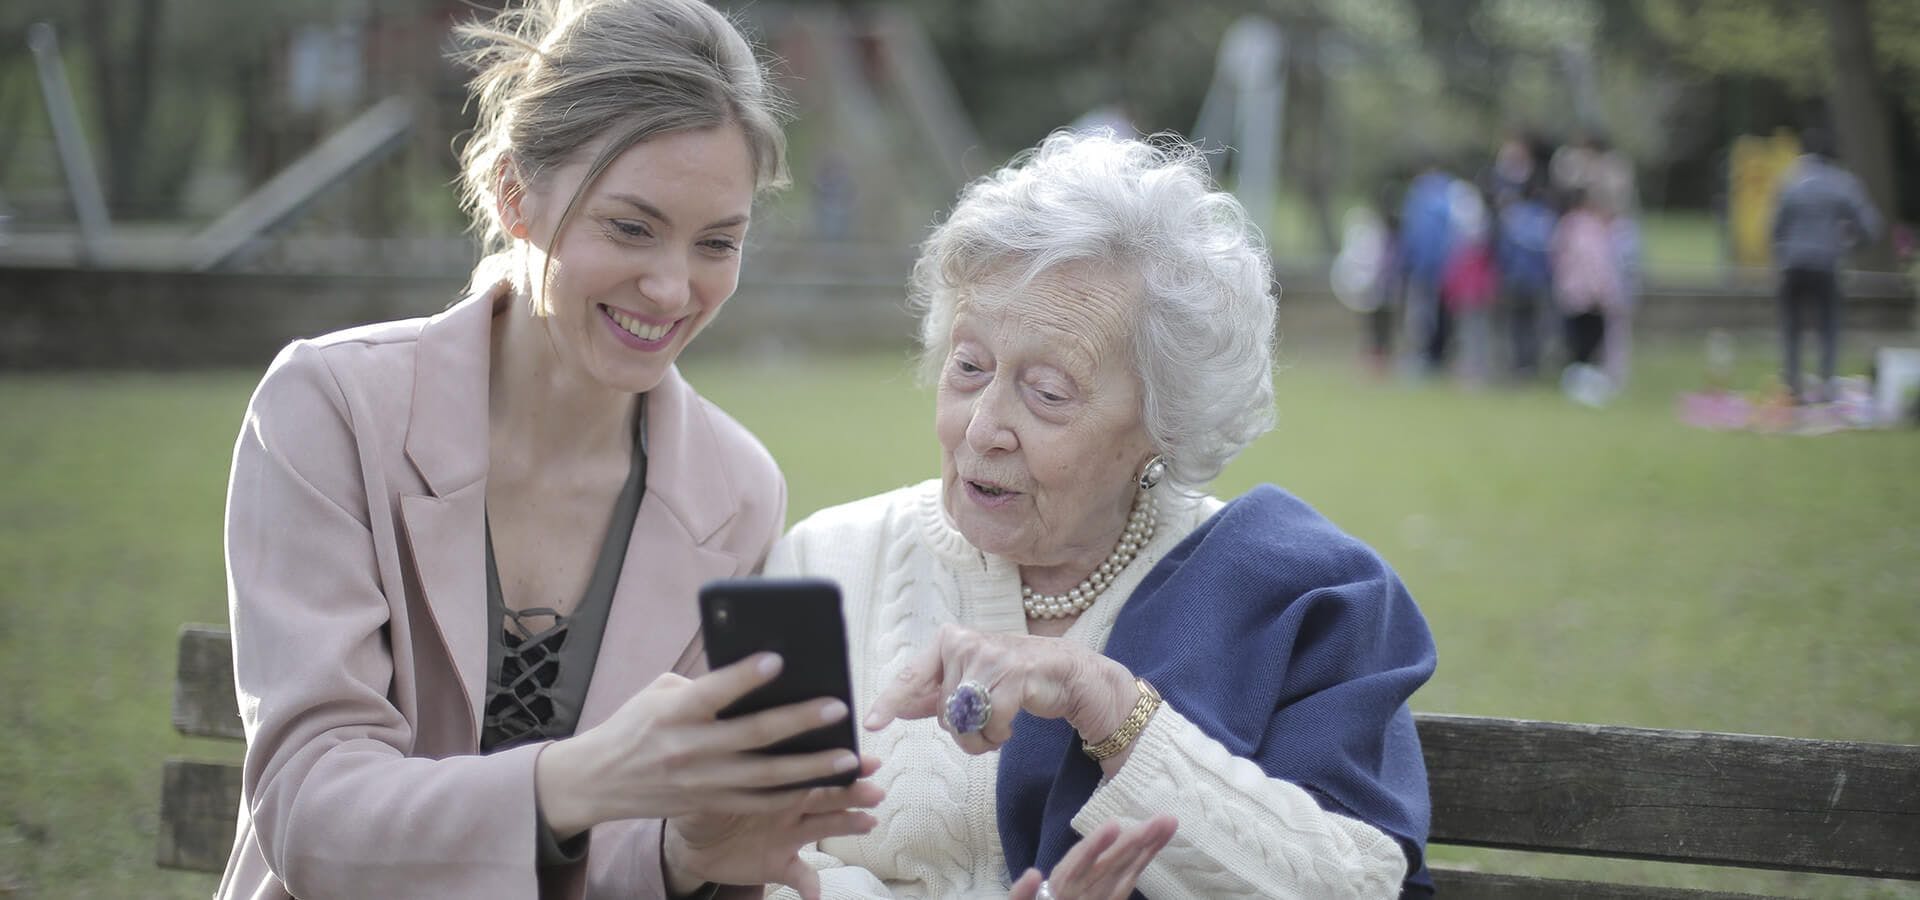 Chica enseñando a persona mayor como funciona un móvil en un parque